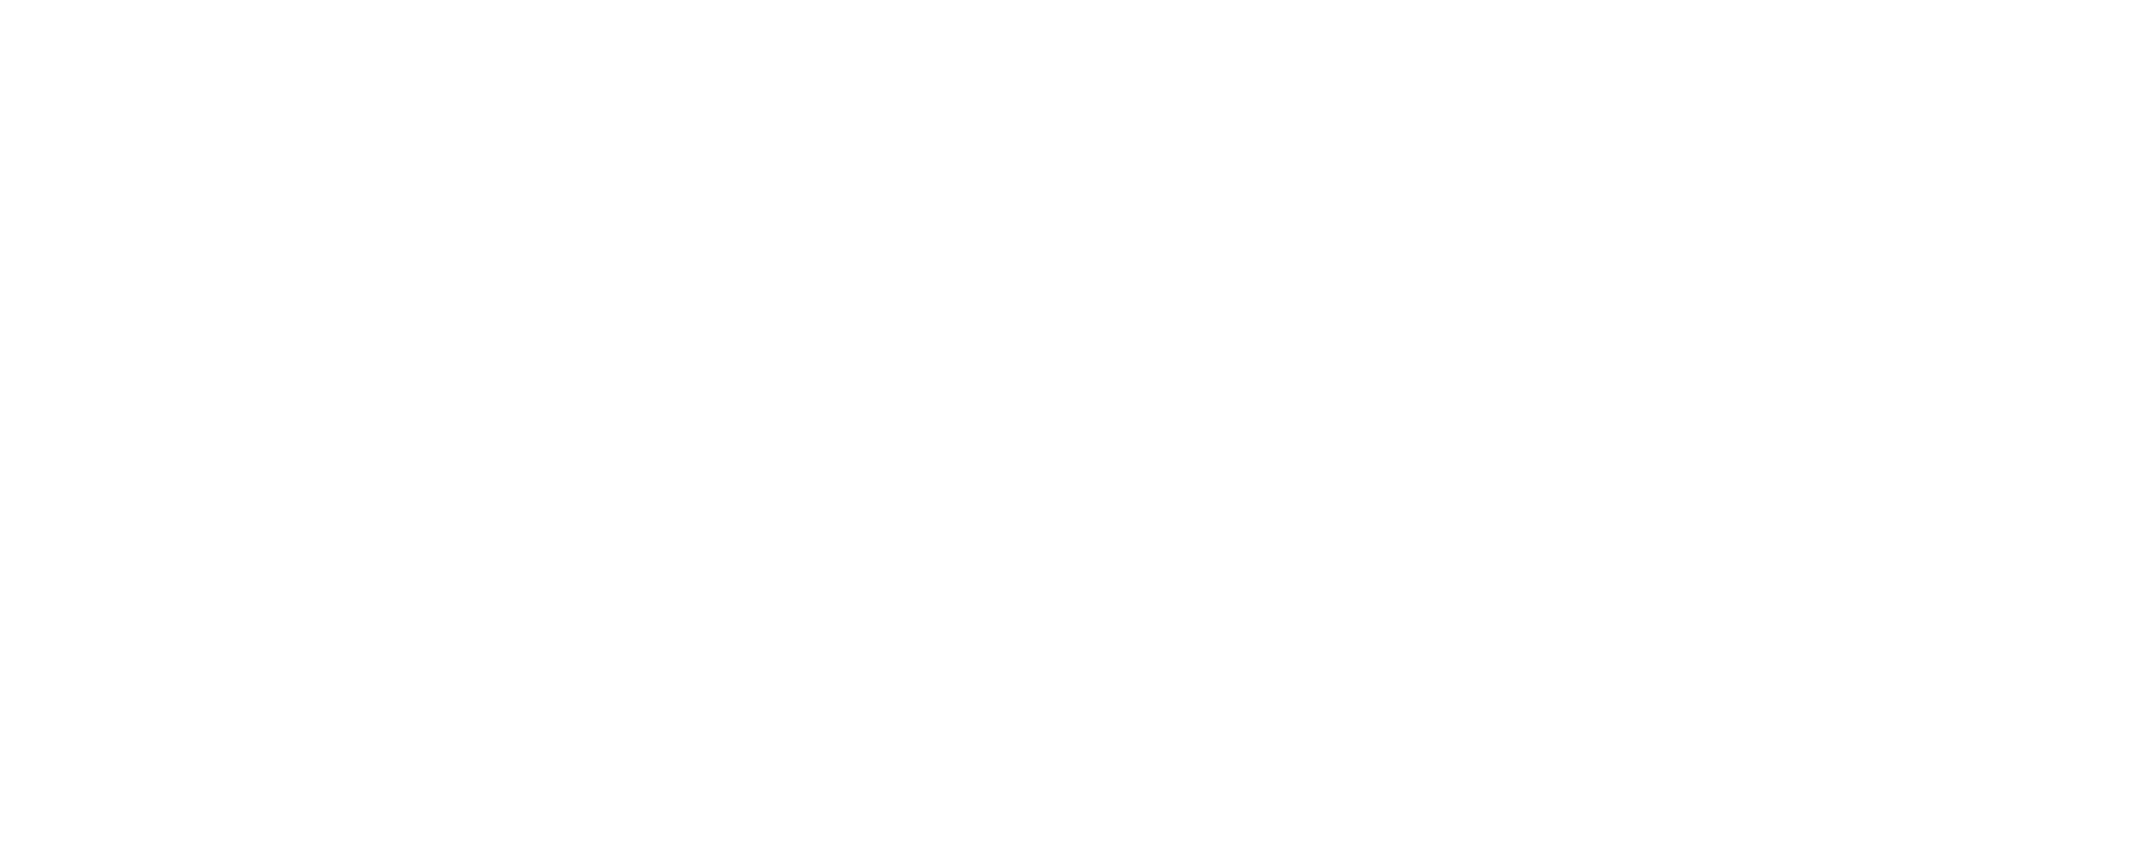 DR Lovelee